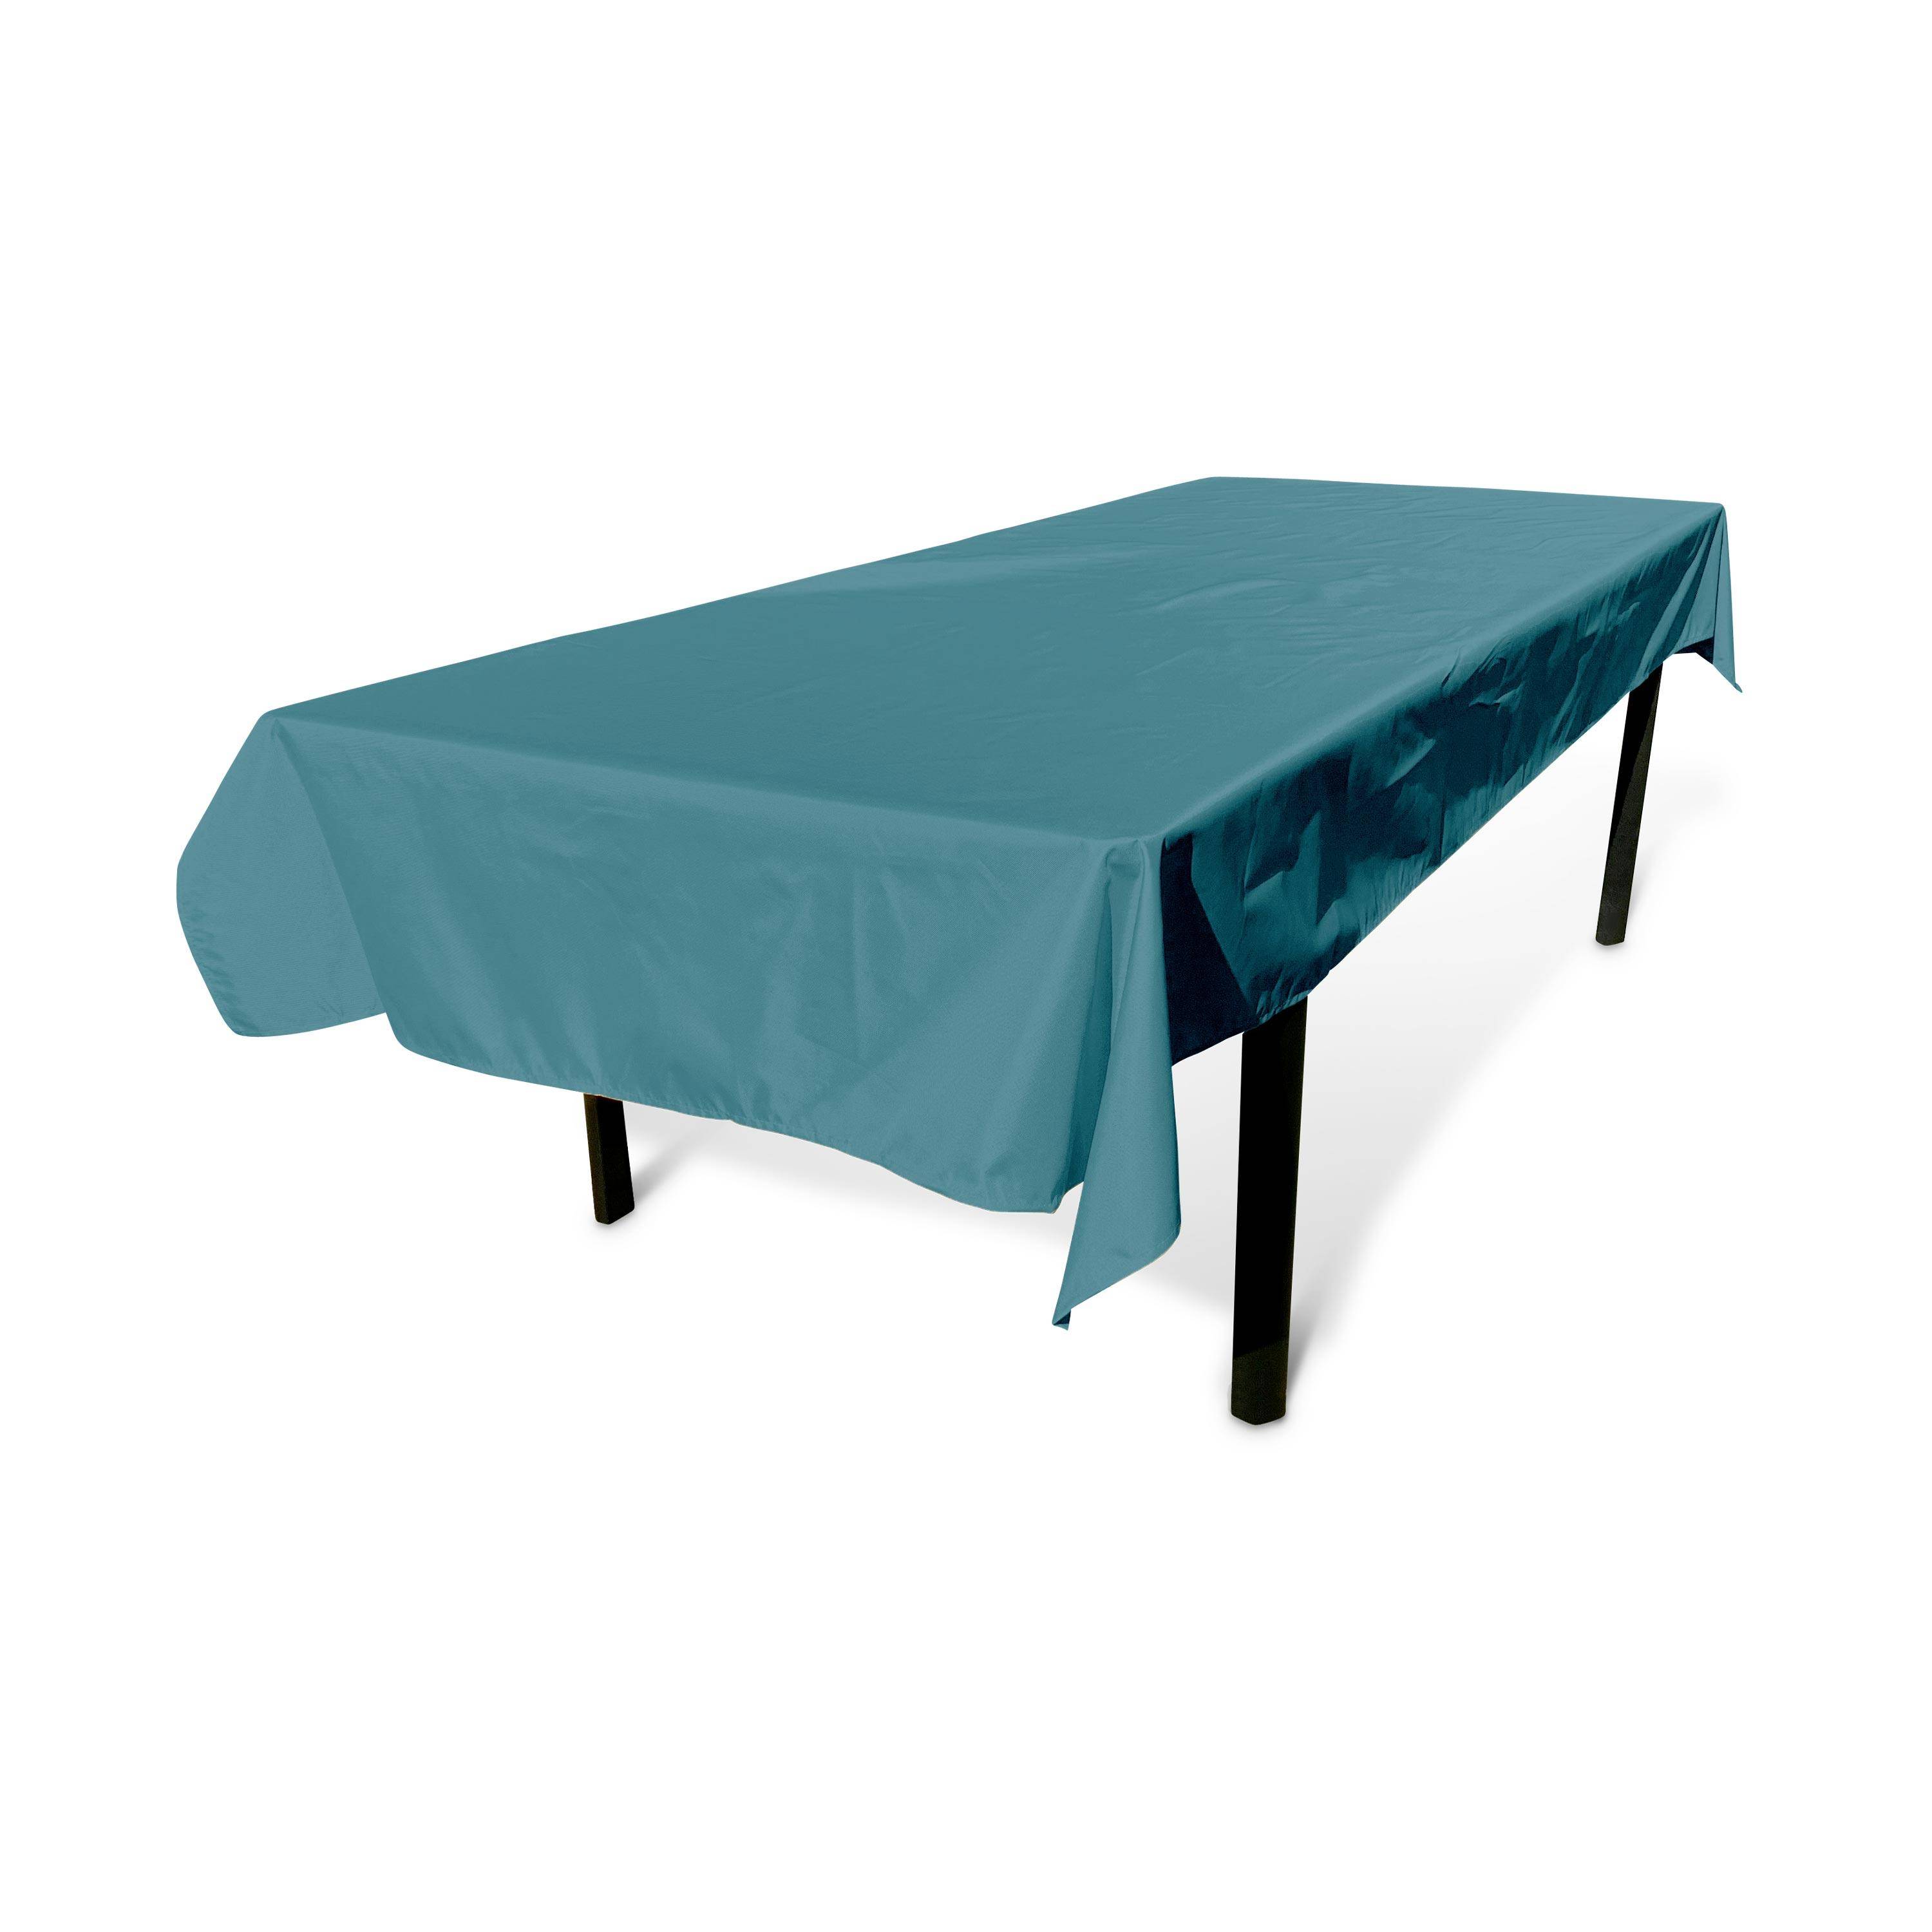 Kollection EXOTIQUE - Outdoor-Tischdecke 300 x 140 cm Entenblau, 100% Polyester, schützt den Tisch, UV-Schutz, sommerlicher Stil Photo1